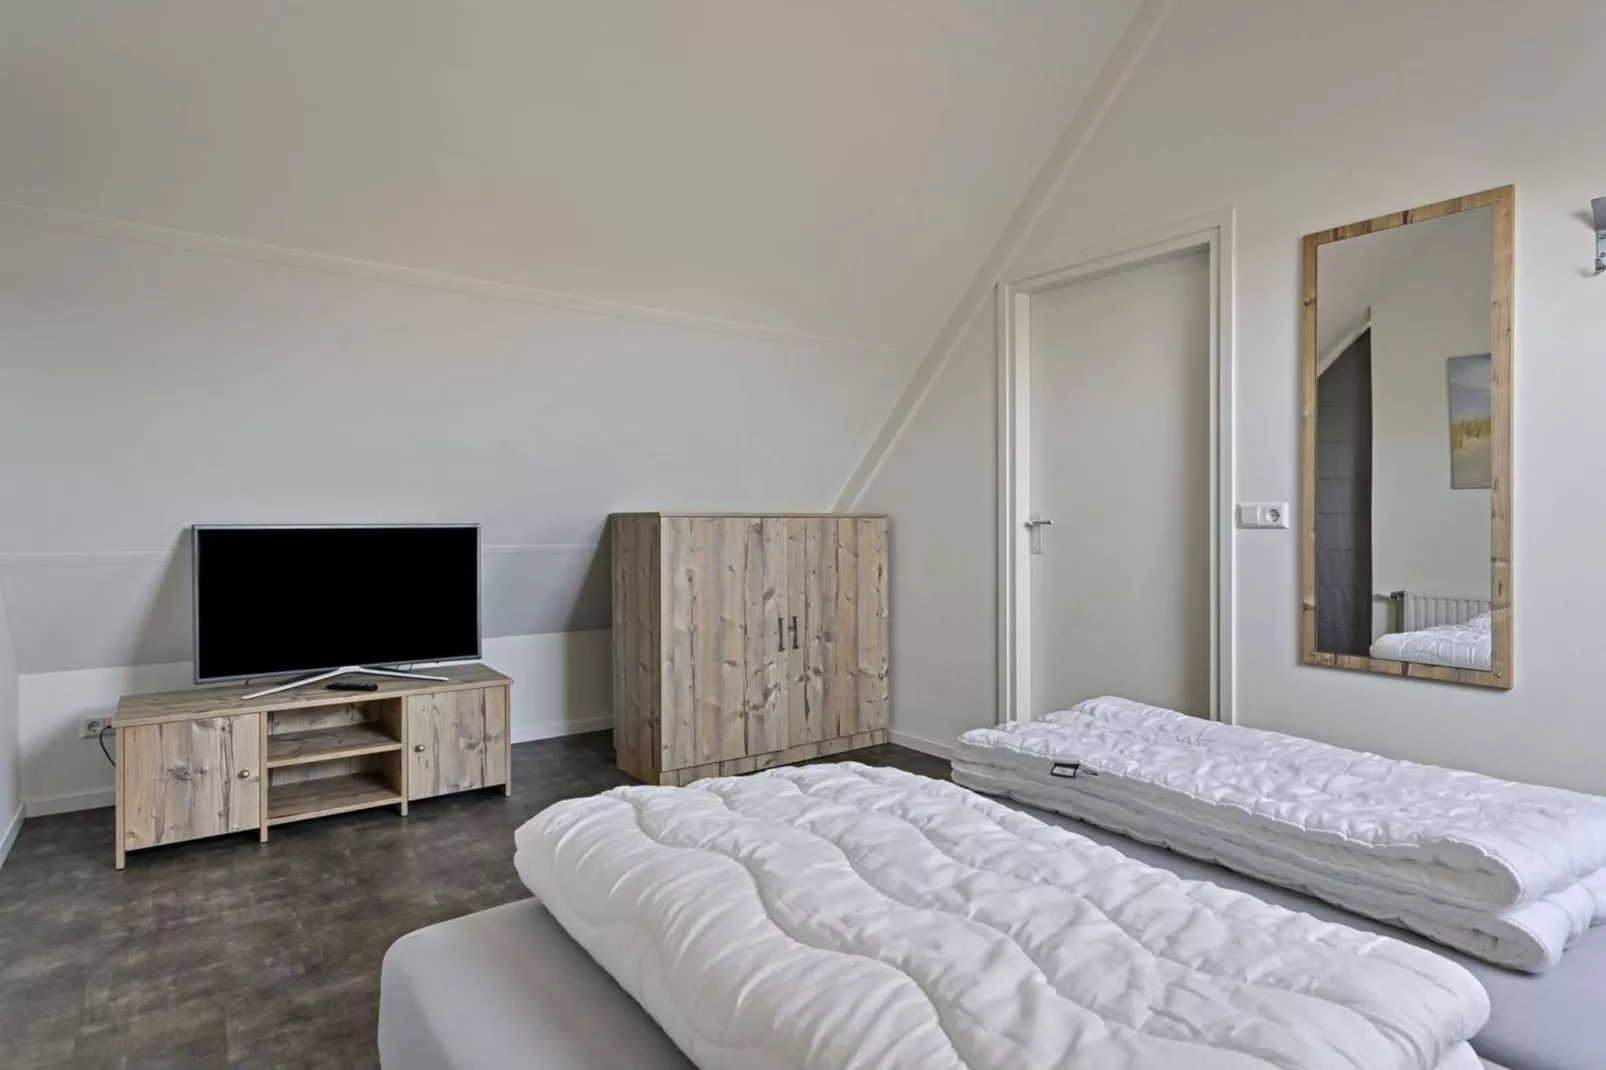 Villa Hopper met jacuzzi extra kosten voor gebruik-Slaapkamer